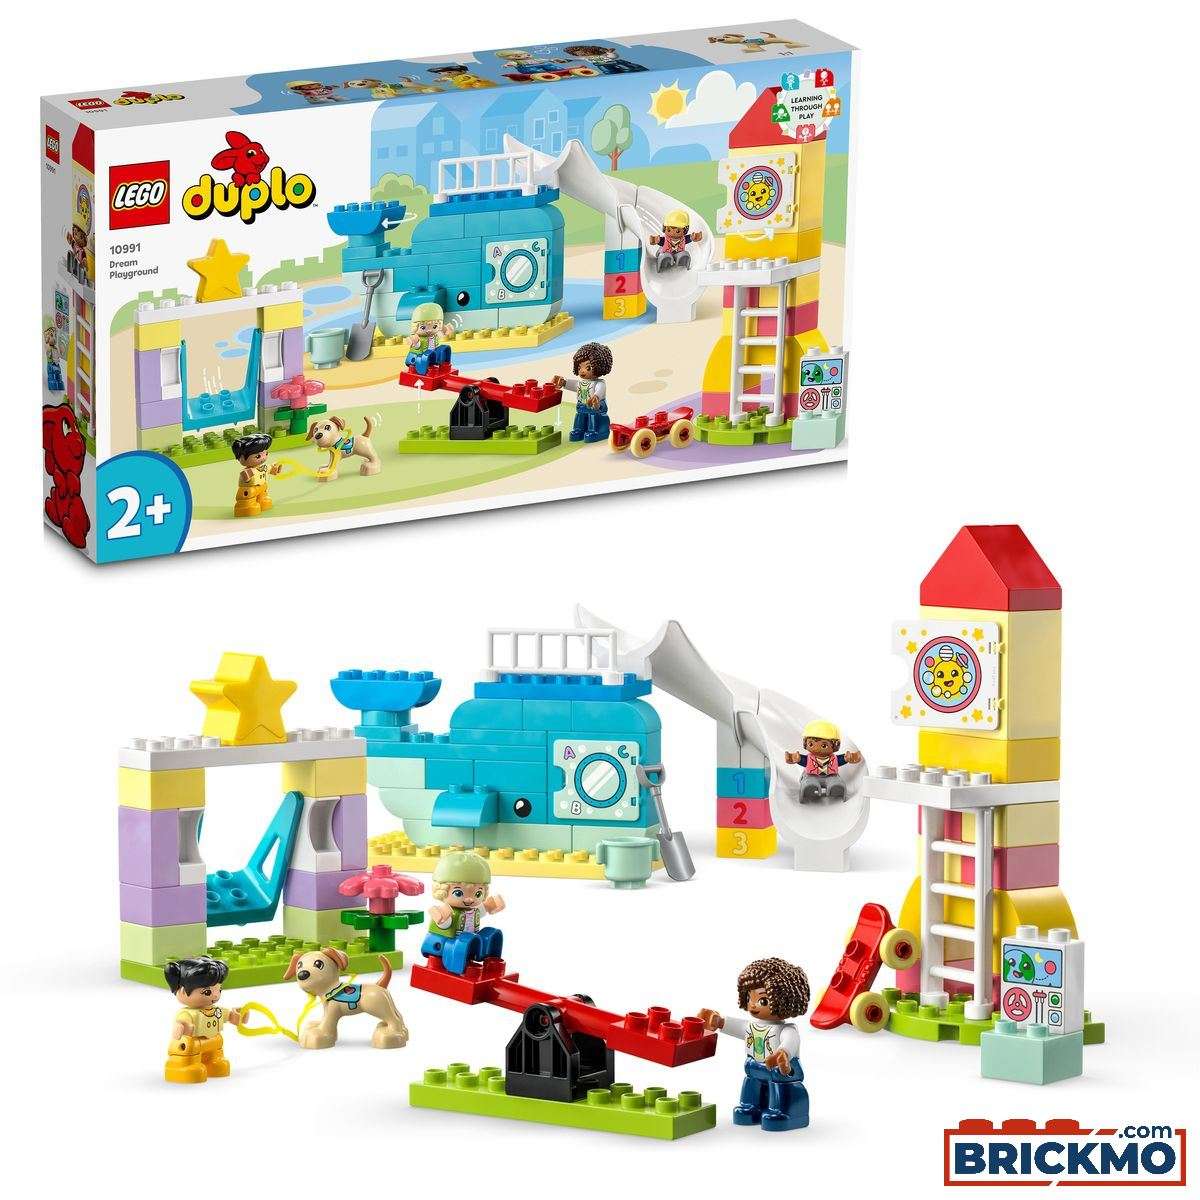 LEGO Duplo 10991 L’aire de jeux des enfants 10991